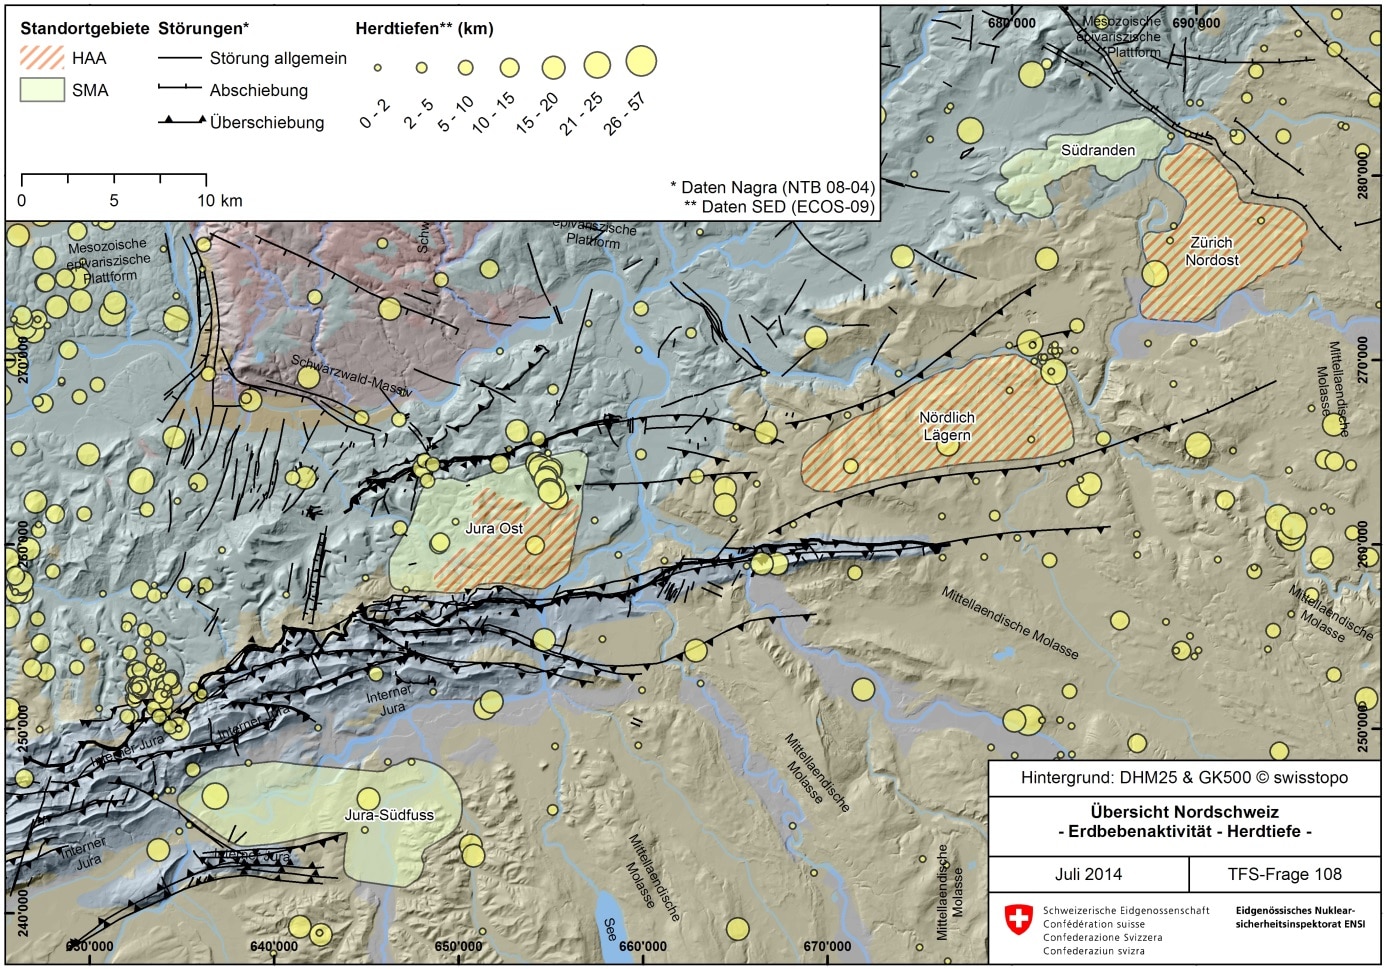 Figur 108-4: Erdbebenaktivität in der Nordschweiz im Zeitraum zwischen 250 n. Chr. und 2008. Dargestellt sind die rekonstruierten Herdtiefen gemäss Erdbebenkatalog des Schweizer Erdbebendiensts (ECOS-09; SED 2011). Die Erdbebenherde von Erdbeben in den geologischen Standortgebieten der Nordschweiz liegen – mit wenigen Ausnahmen – in Tiefen > 10 km. Zu beachten gilt, dass die Lokalisierung und Herdtiefenbestimmung der nicht instrumentell erfassten Beben (d. h. vor 1975) mit grösseren Unsicherheiten behaftet ist.